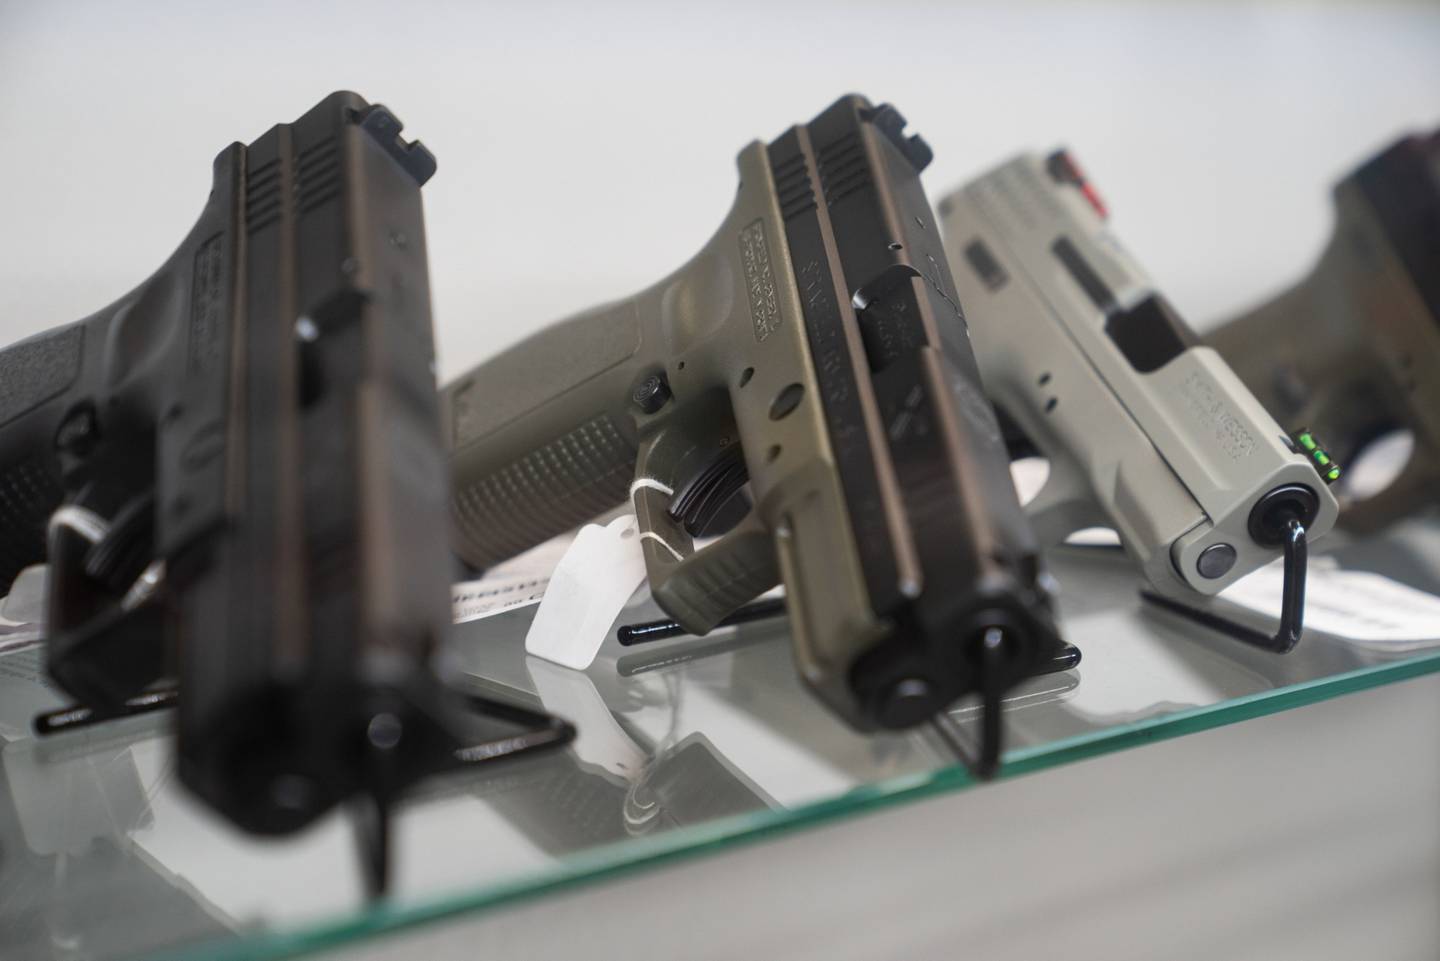 Pistolas semiautomáticas Smith & Wesson Brands Inc. y Springfield Armory Inc. a la venta en la tienda Hiram's Guns.